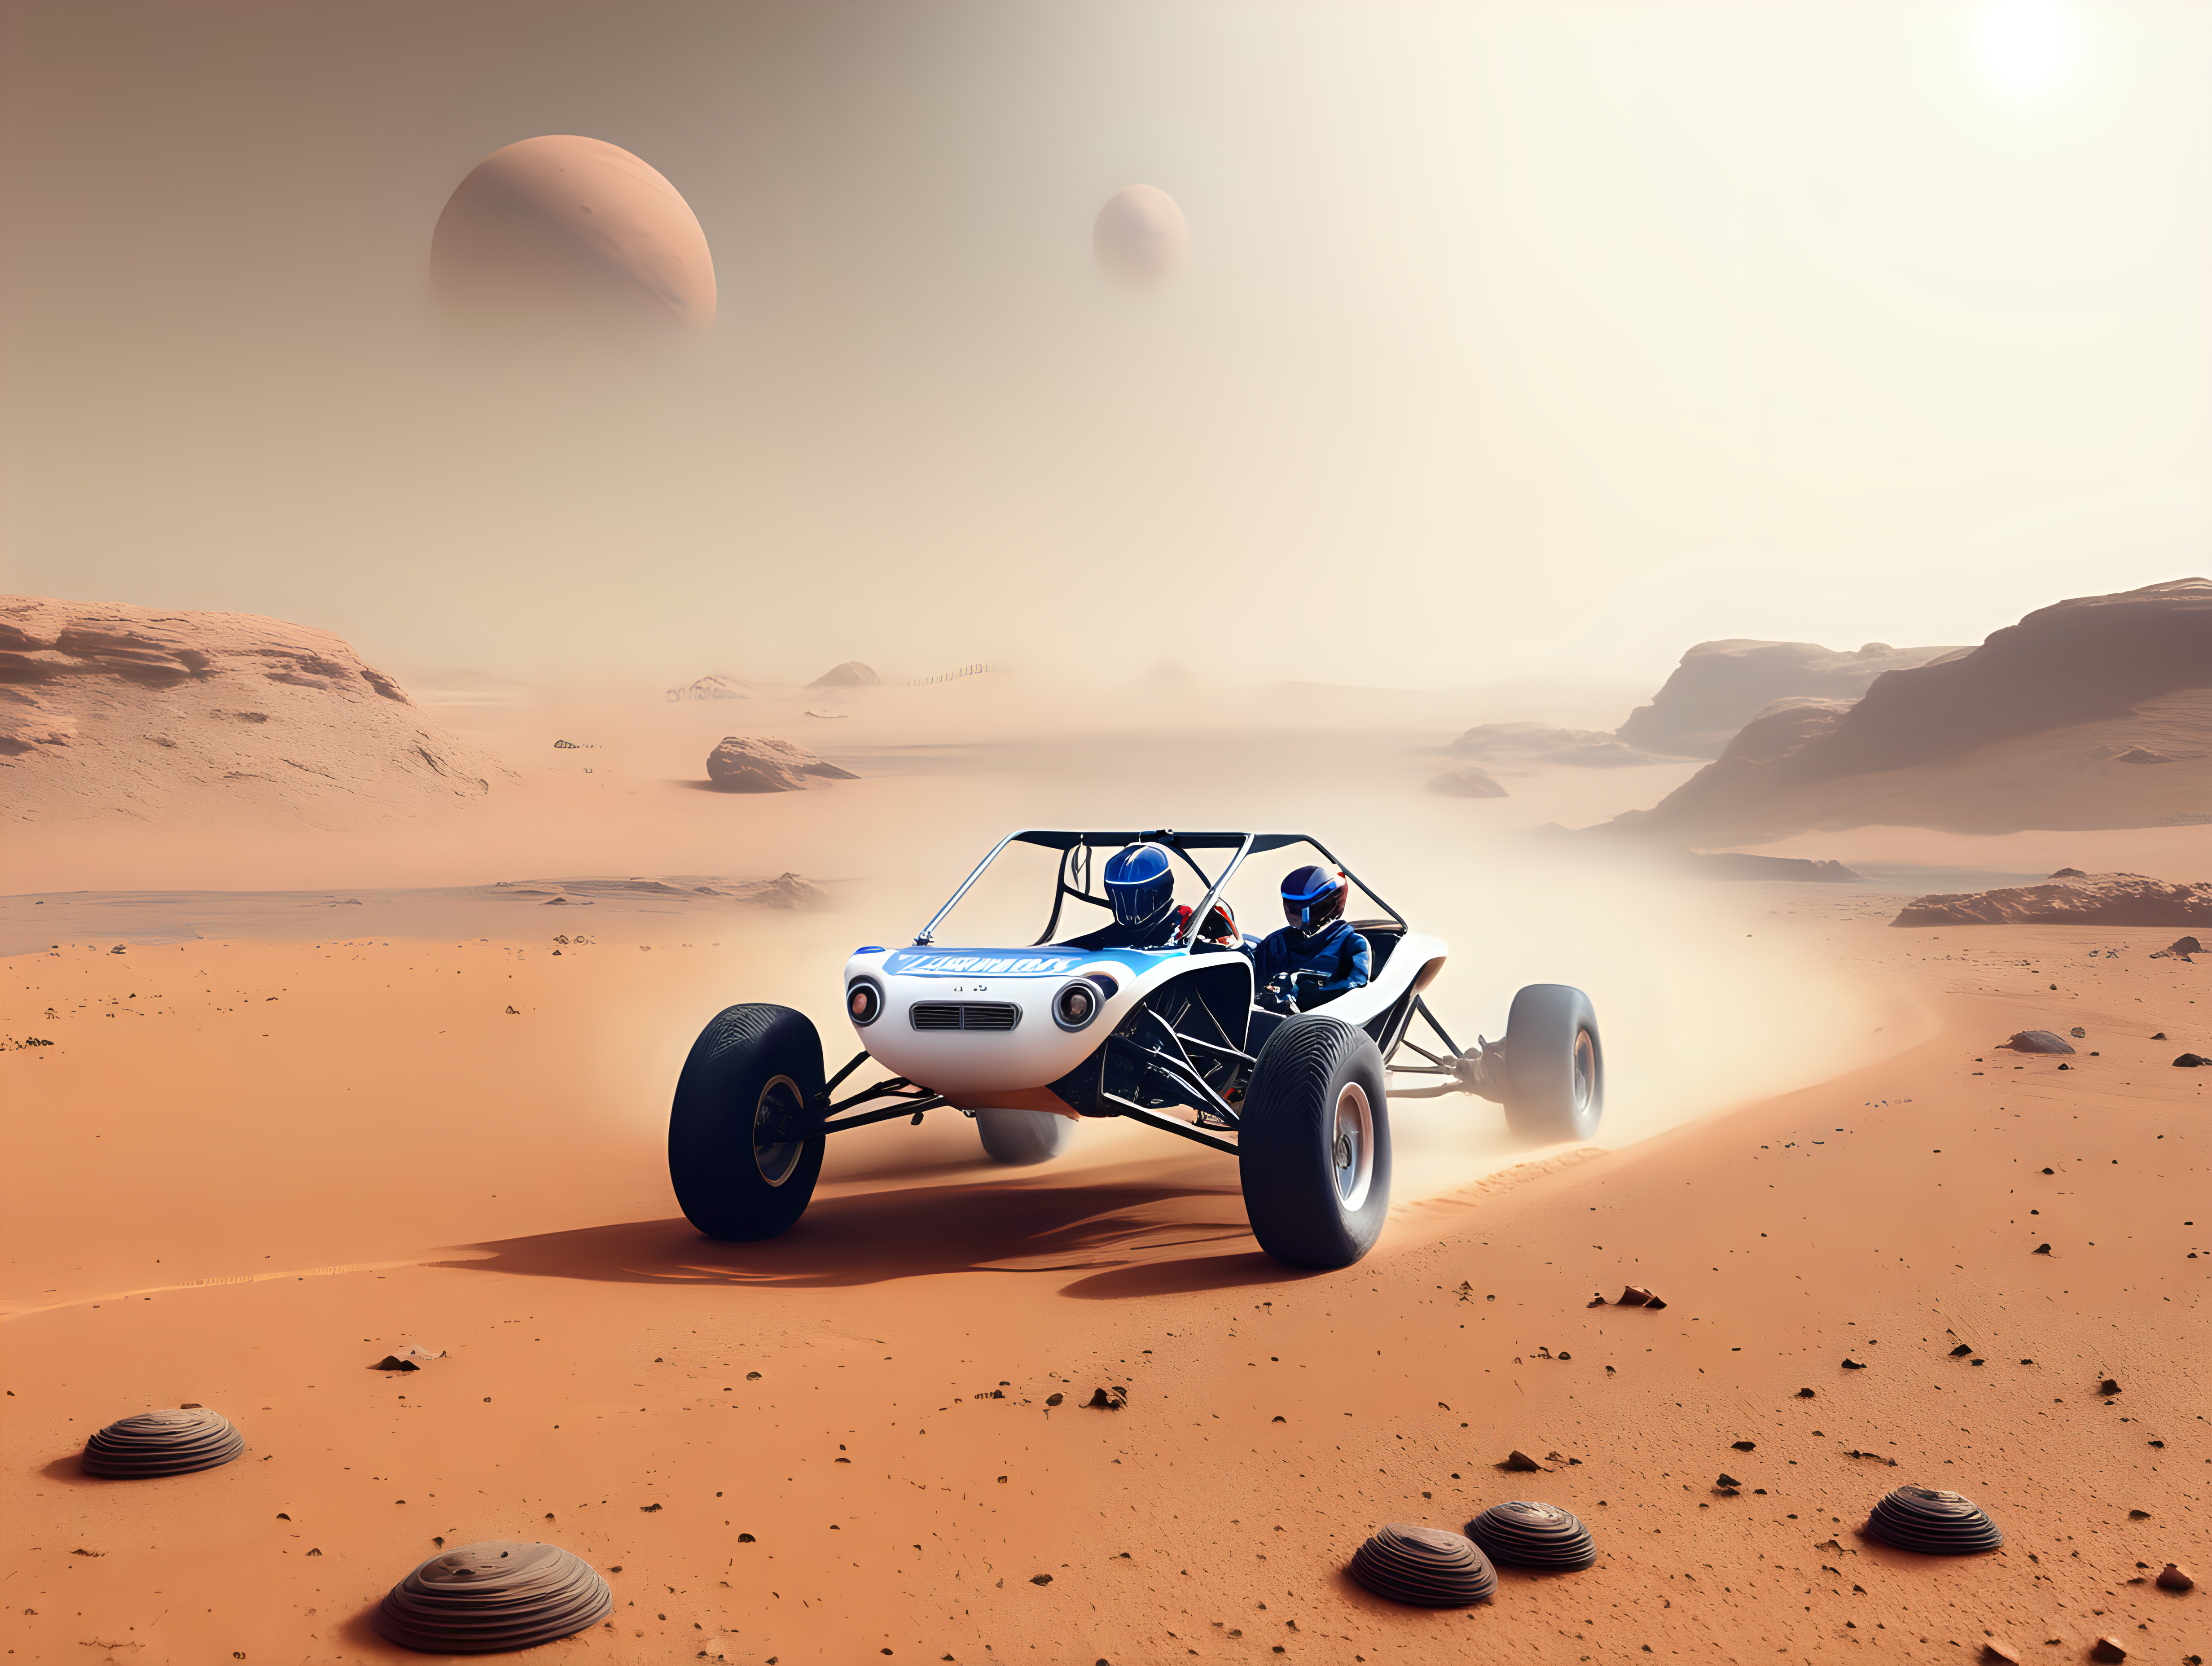 Dune buggy race on Mars